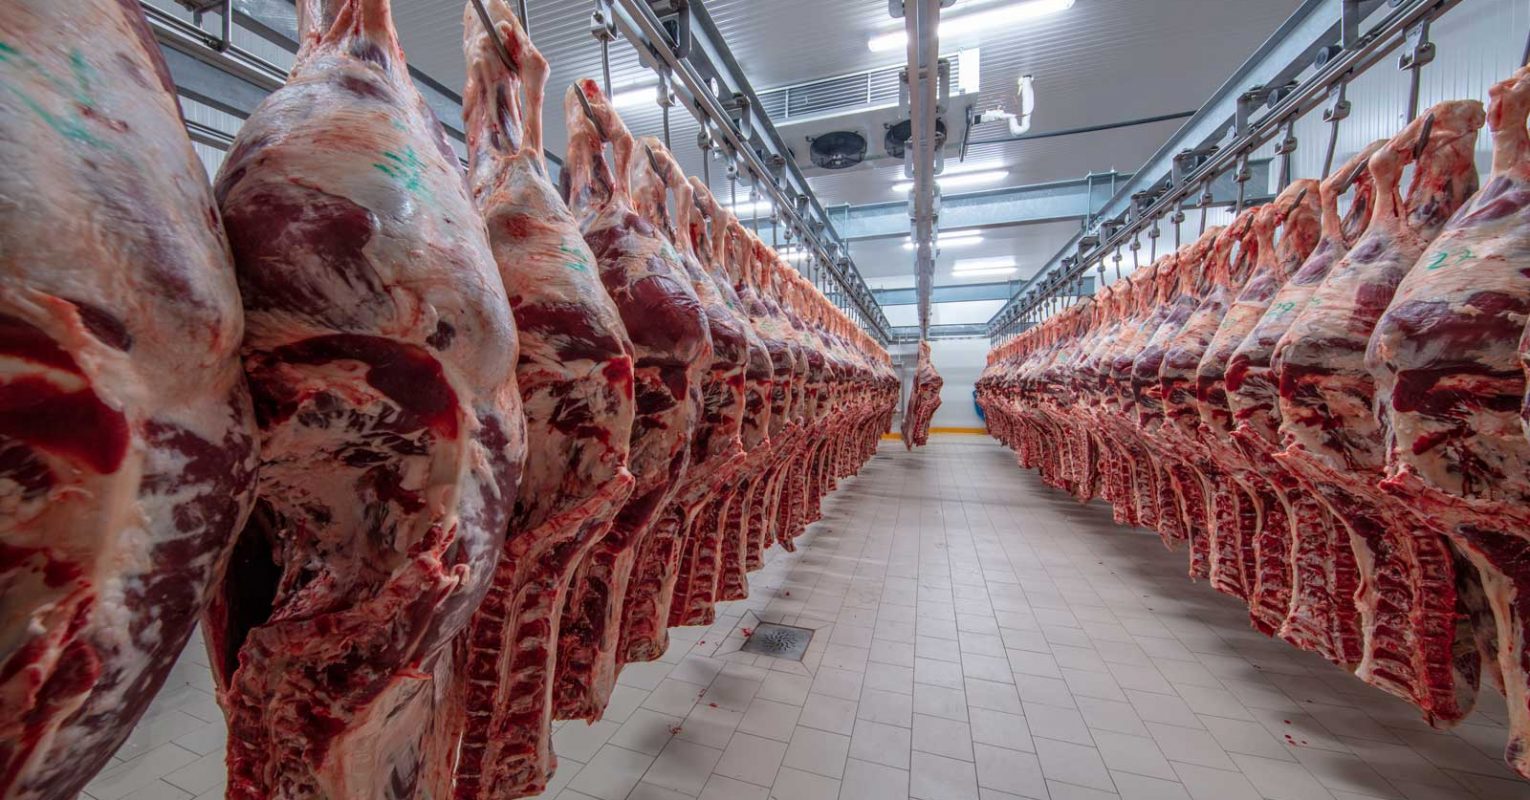 Fleischindustrie im März 2020 mit Umsatzrekord